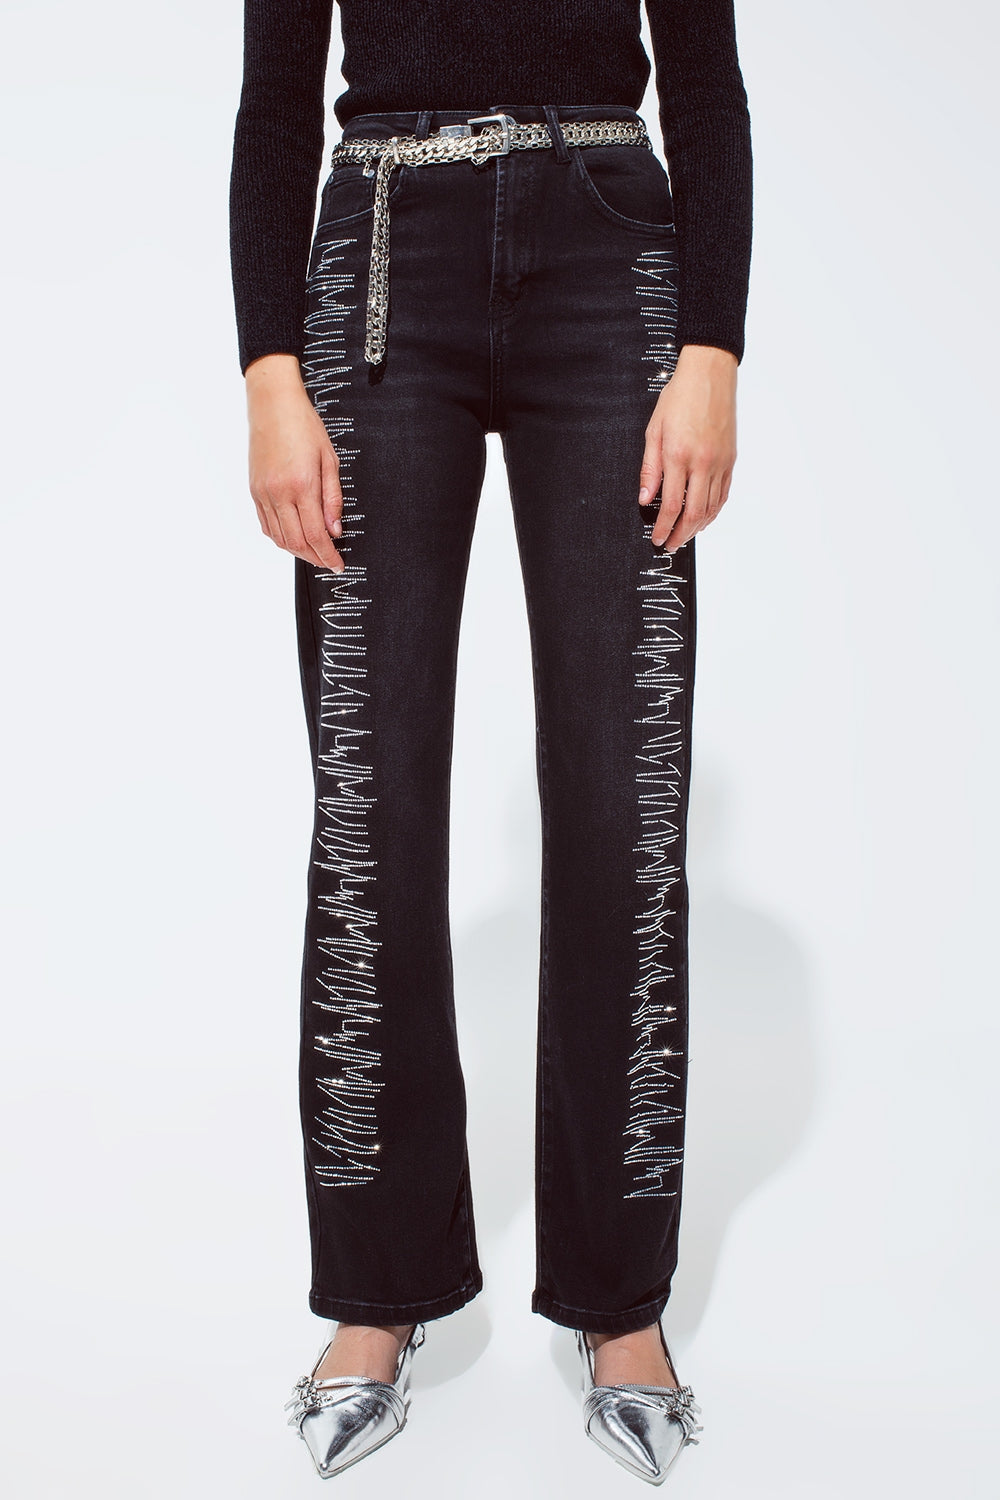 Q2 Jeans dritti neri con dettagli in strass argentati